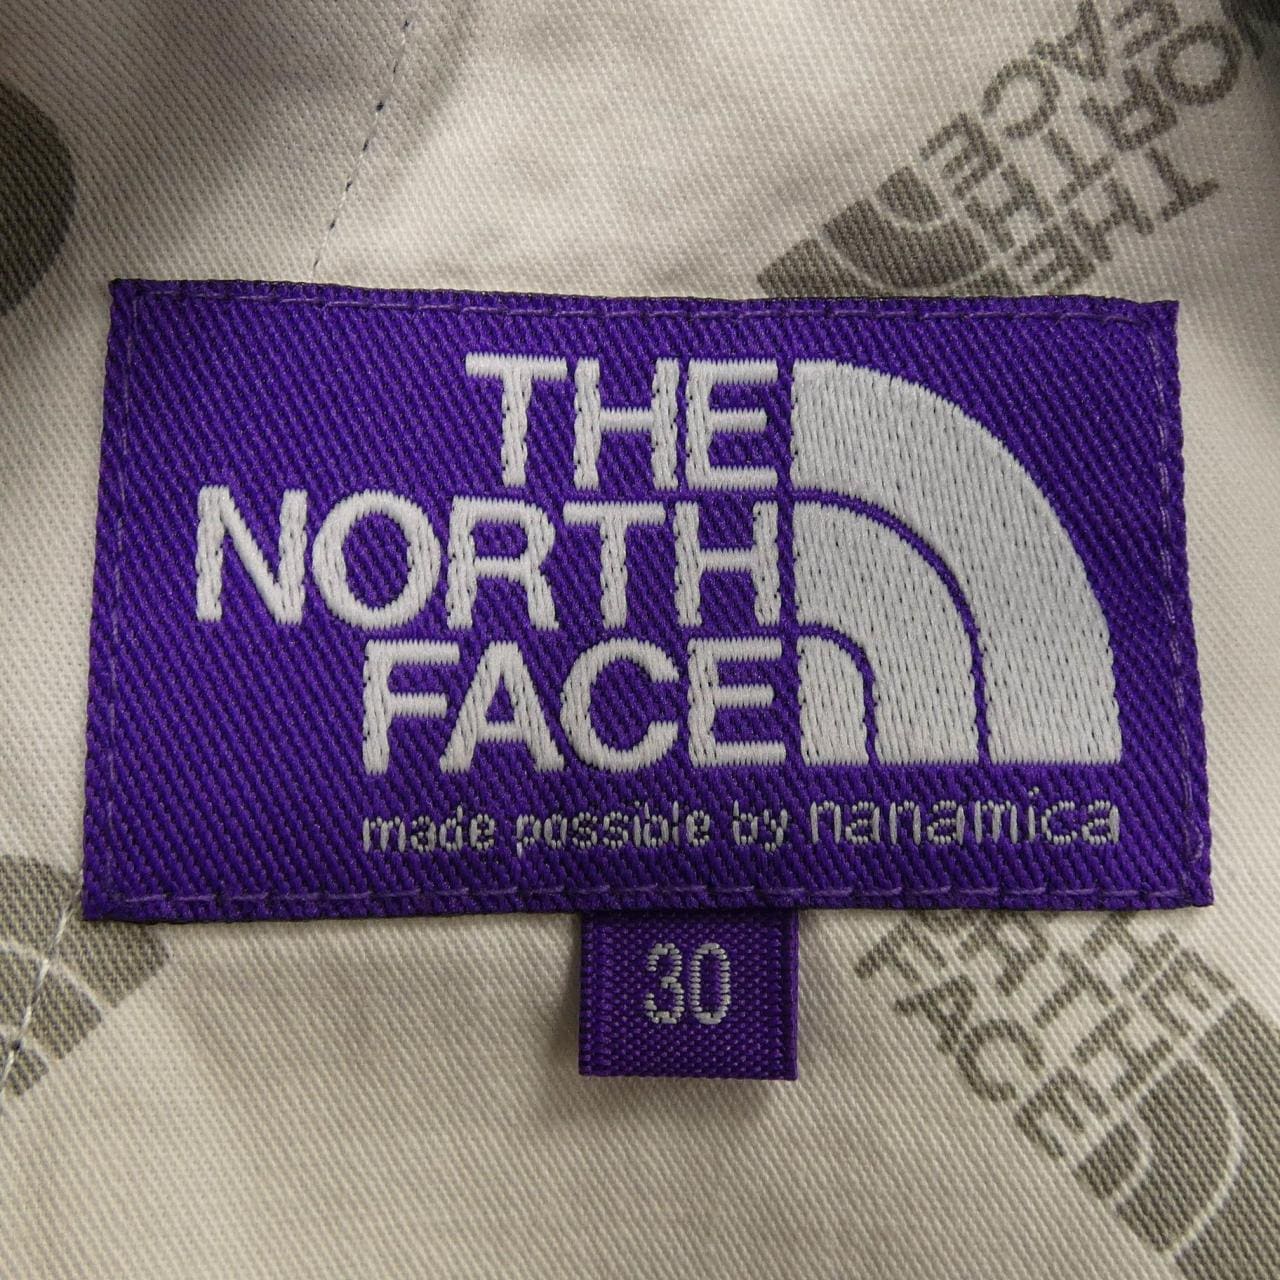 THE NORTH FACE褲子